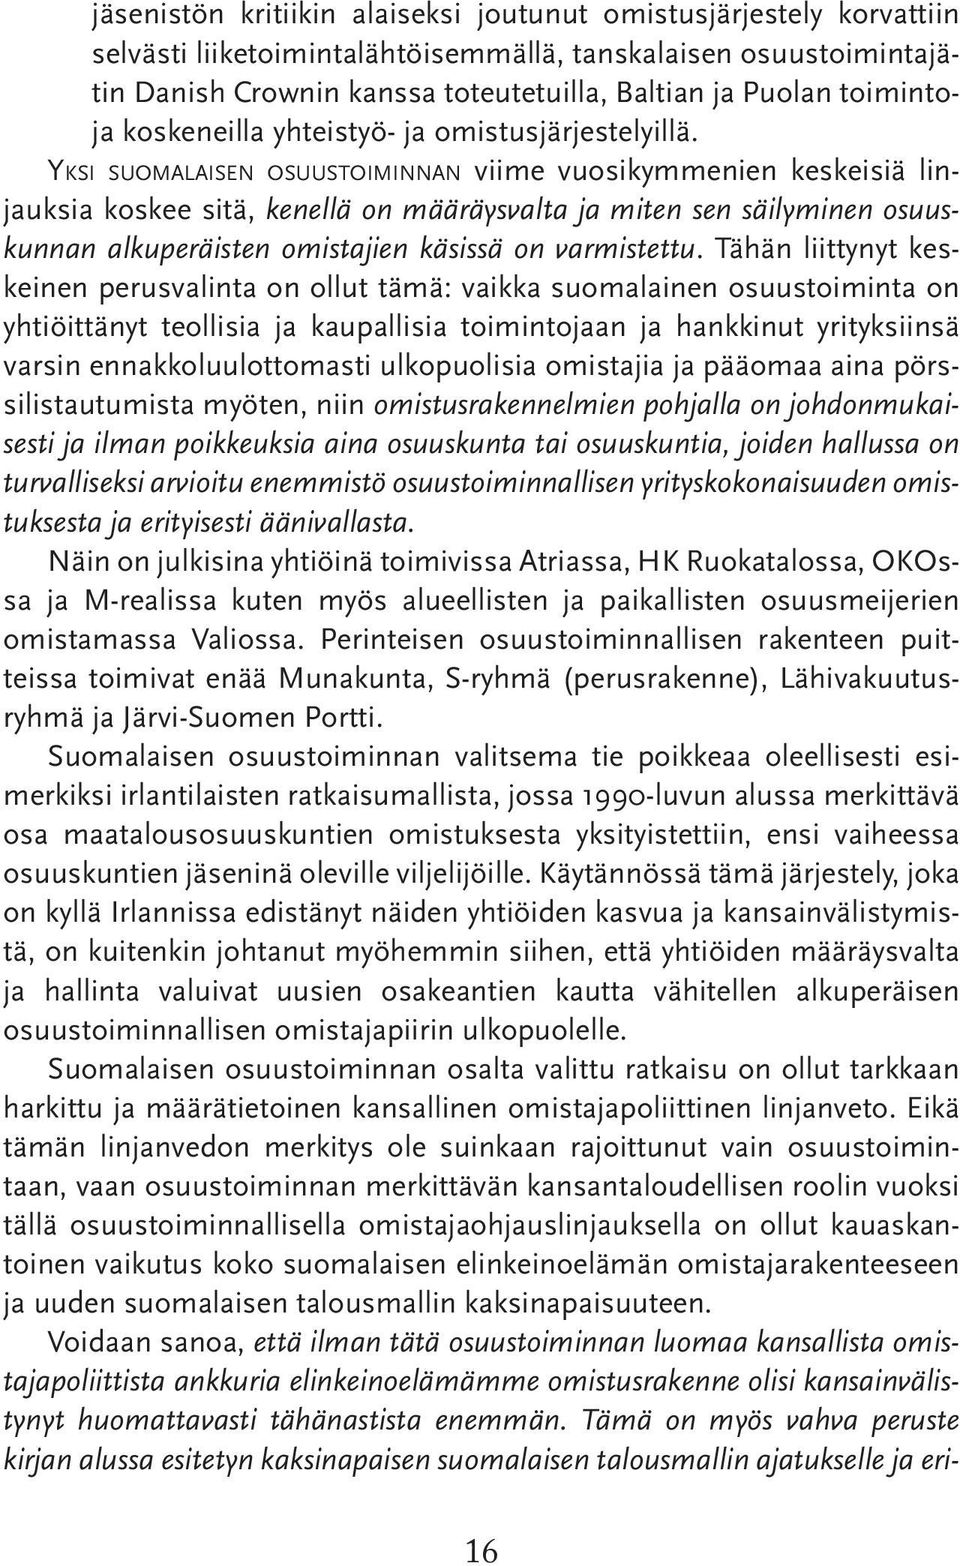 Yksi suomalaisen osuustoiminnan viime vuosikymmenien keskeisiä linjauksia koskee sitä, kenellä on määräysvalta ja miten sen säilyminen osuuskunnan alkuperäisten omistajien käsissä on varmistettu.